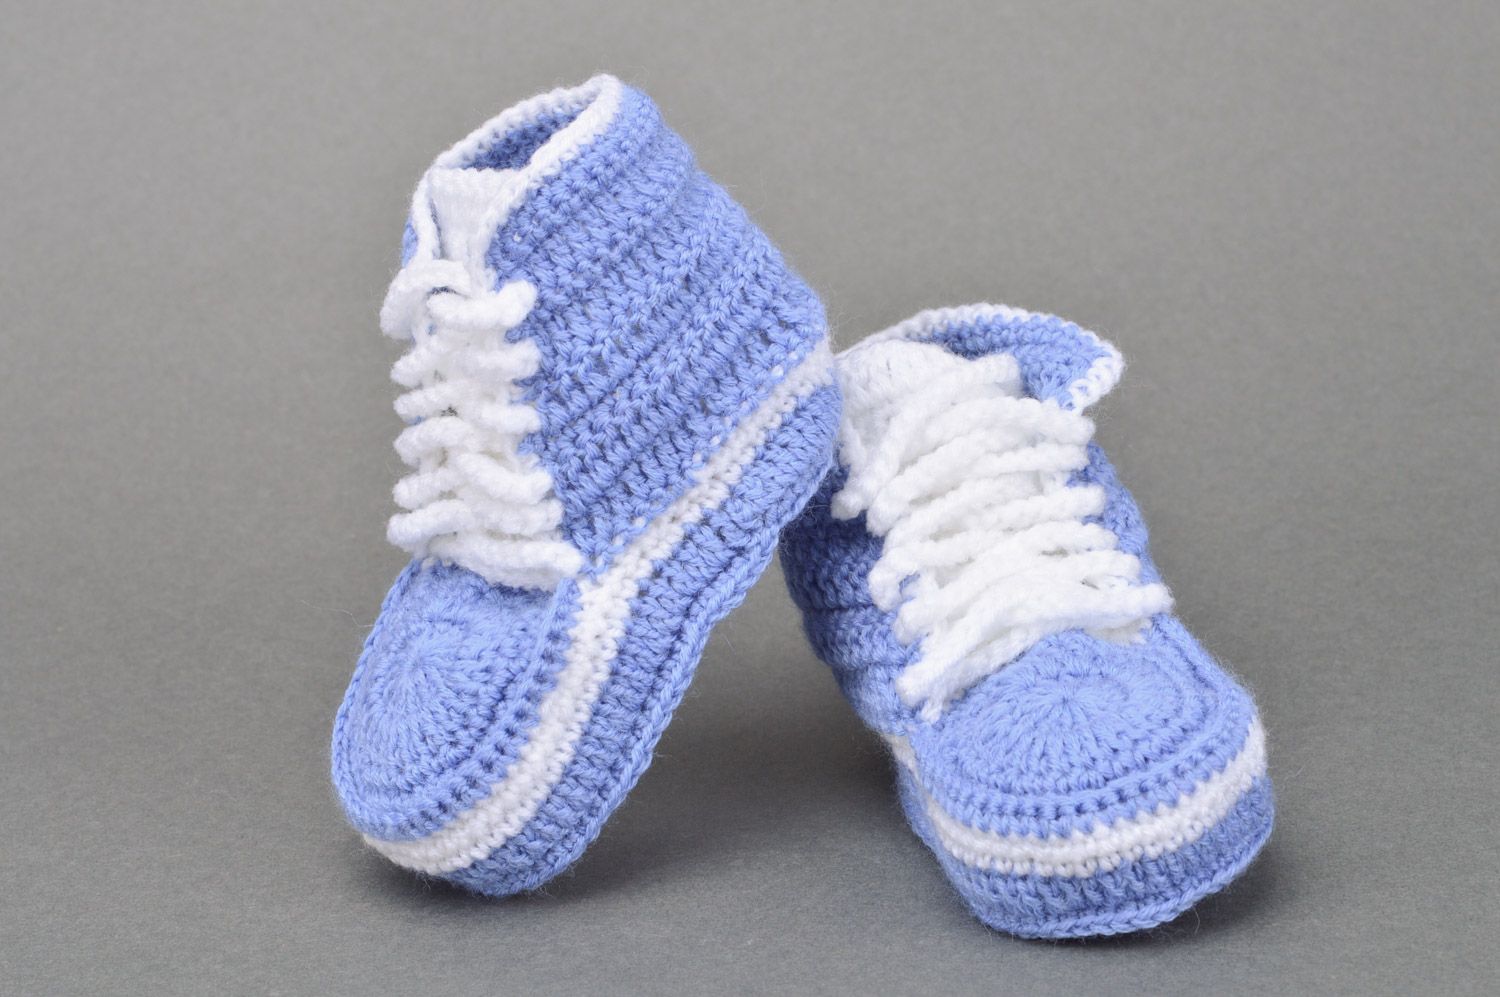 Кеды вязаные крючком детские синие с белым маленькие со шнурками ручная работа фото 2